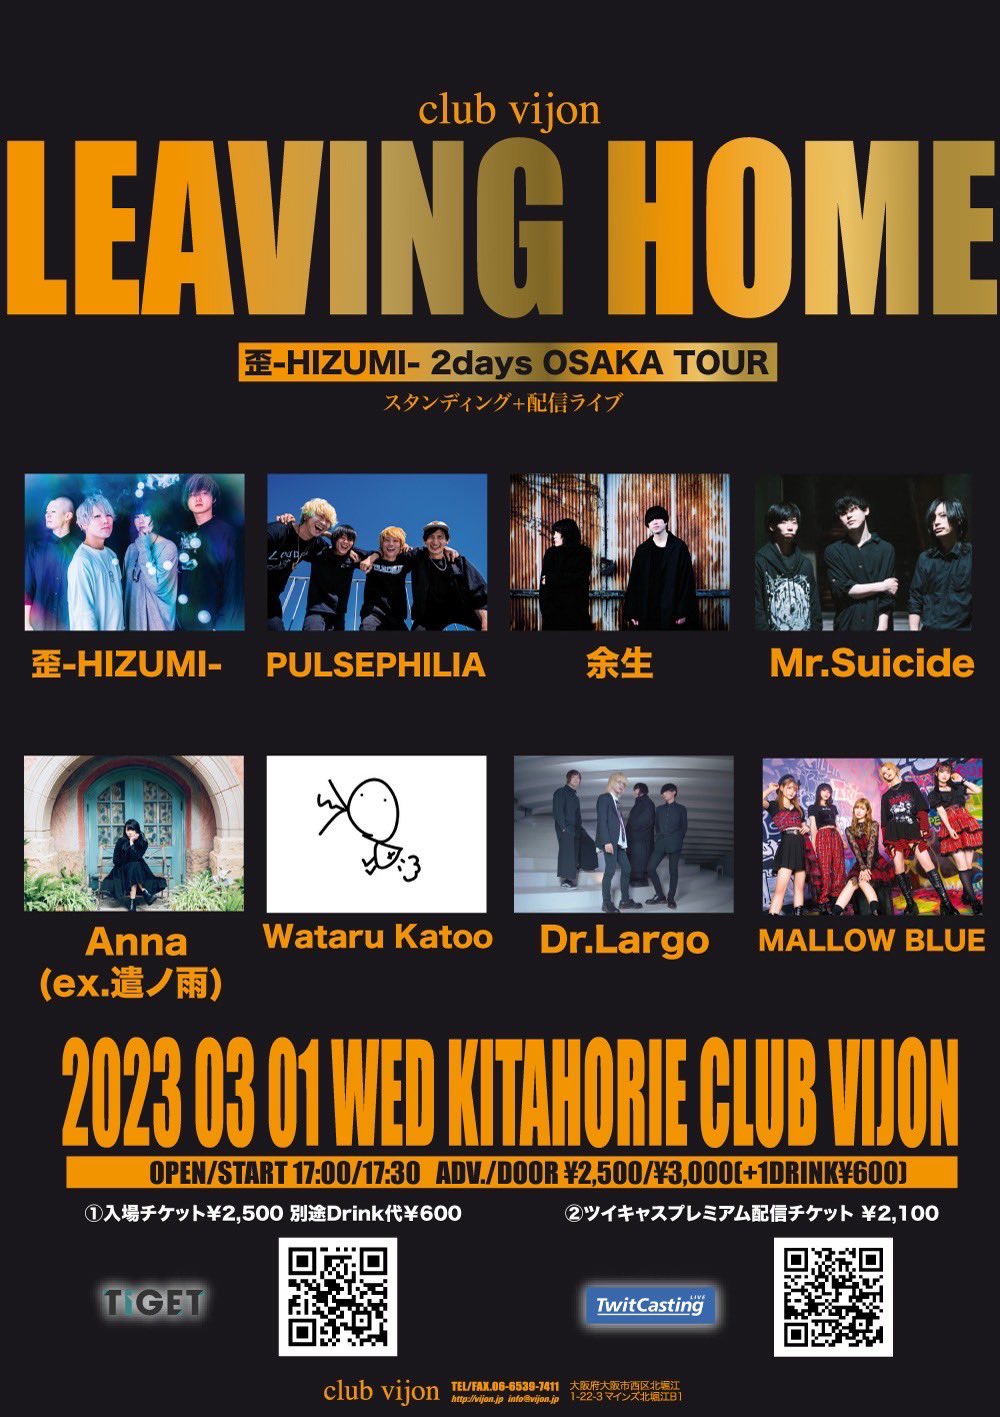 星井あおサポート出演公演(MALLOW BLUE)『【LEAVING HOME】歪-HIZUMI- 2days OSAKA TOUR』